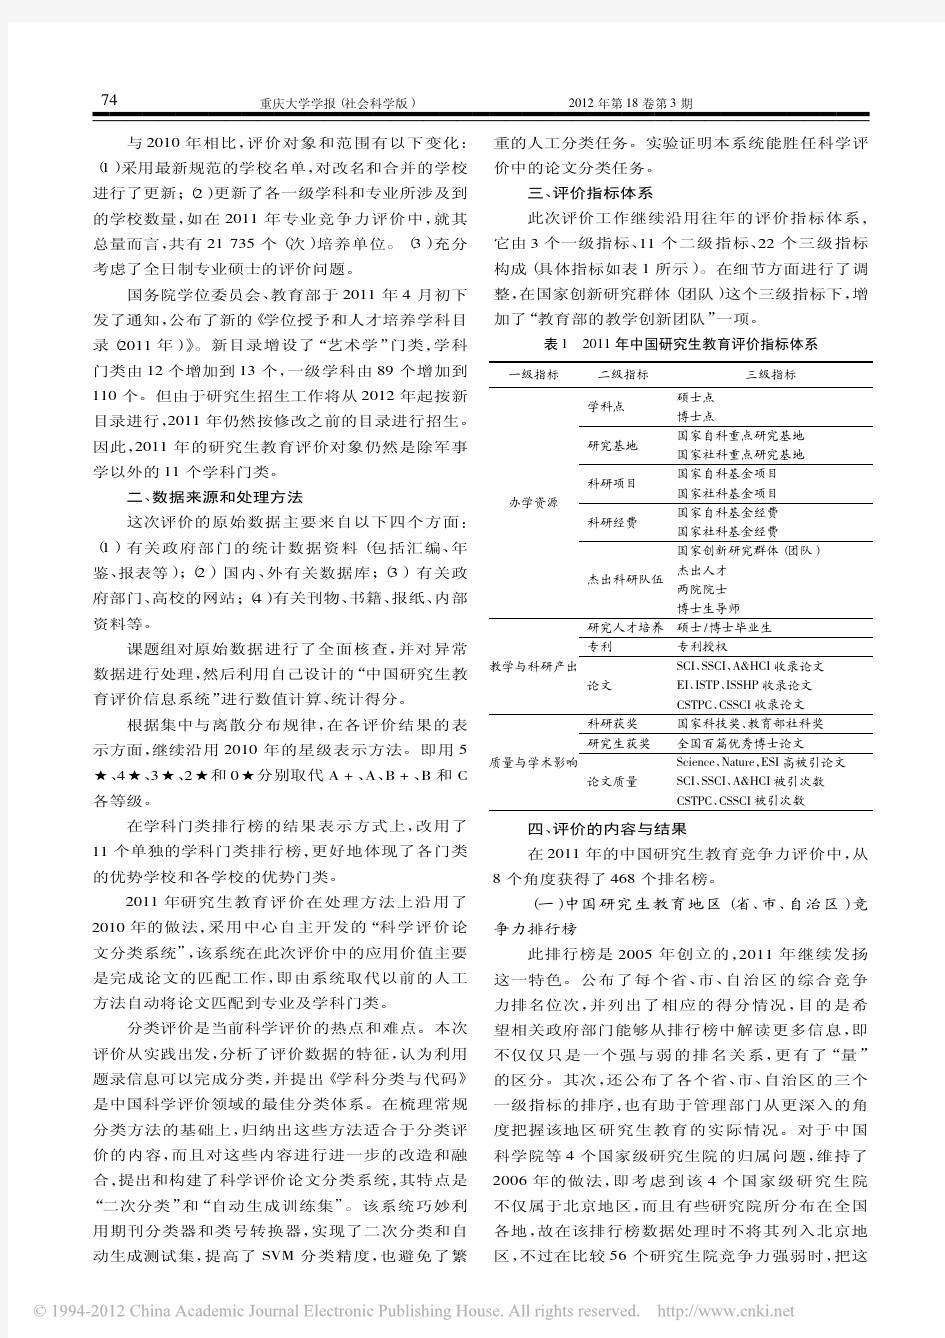 中国研究生教育及学科专业评价报告_2011_2012_